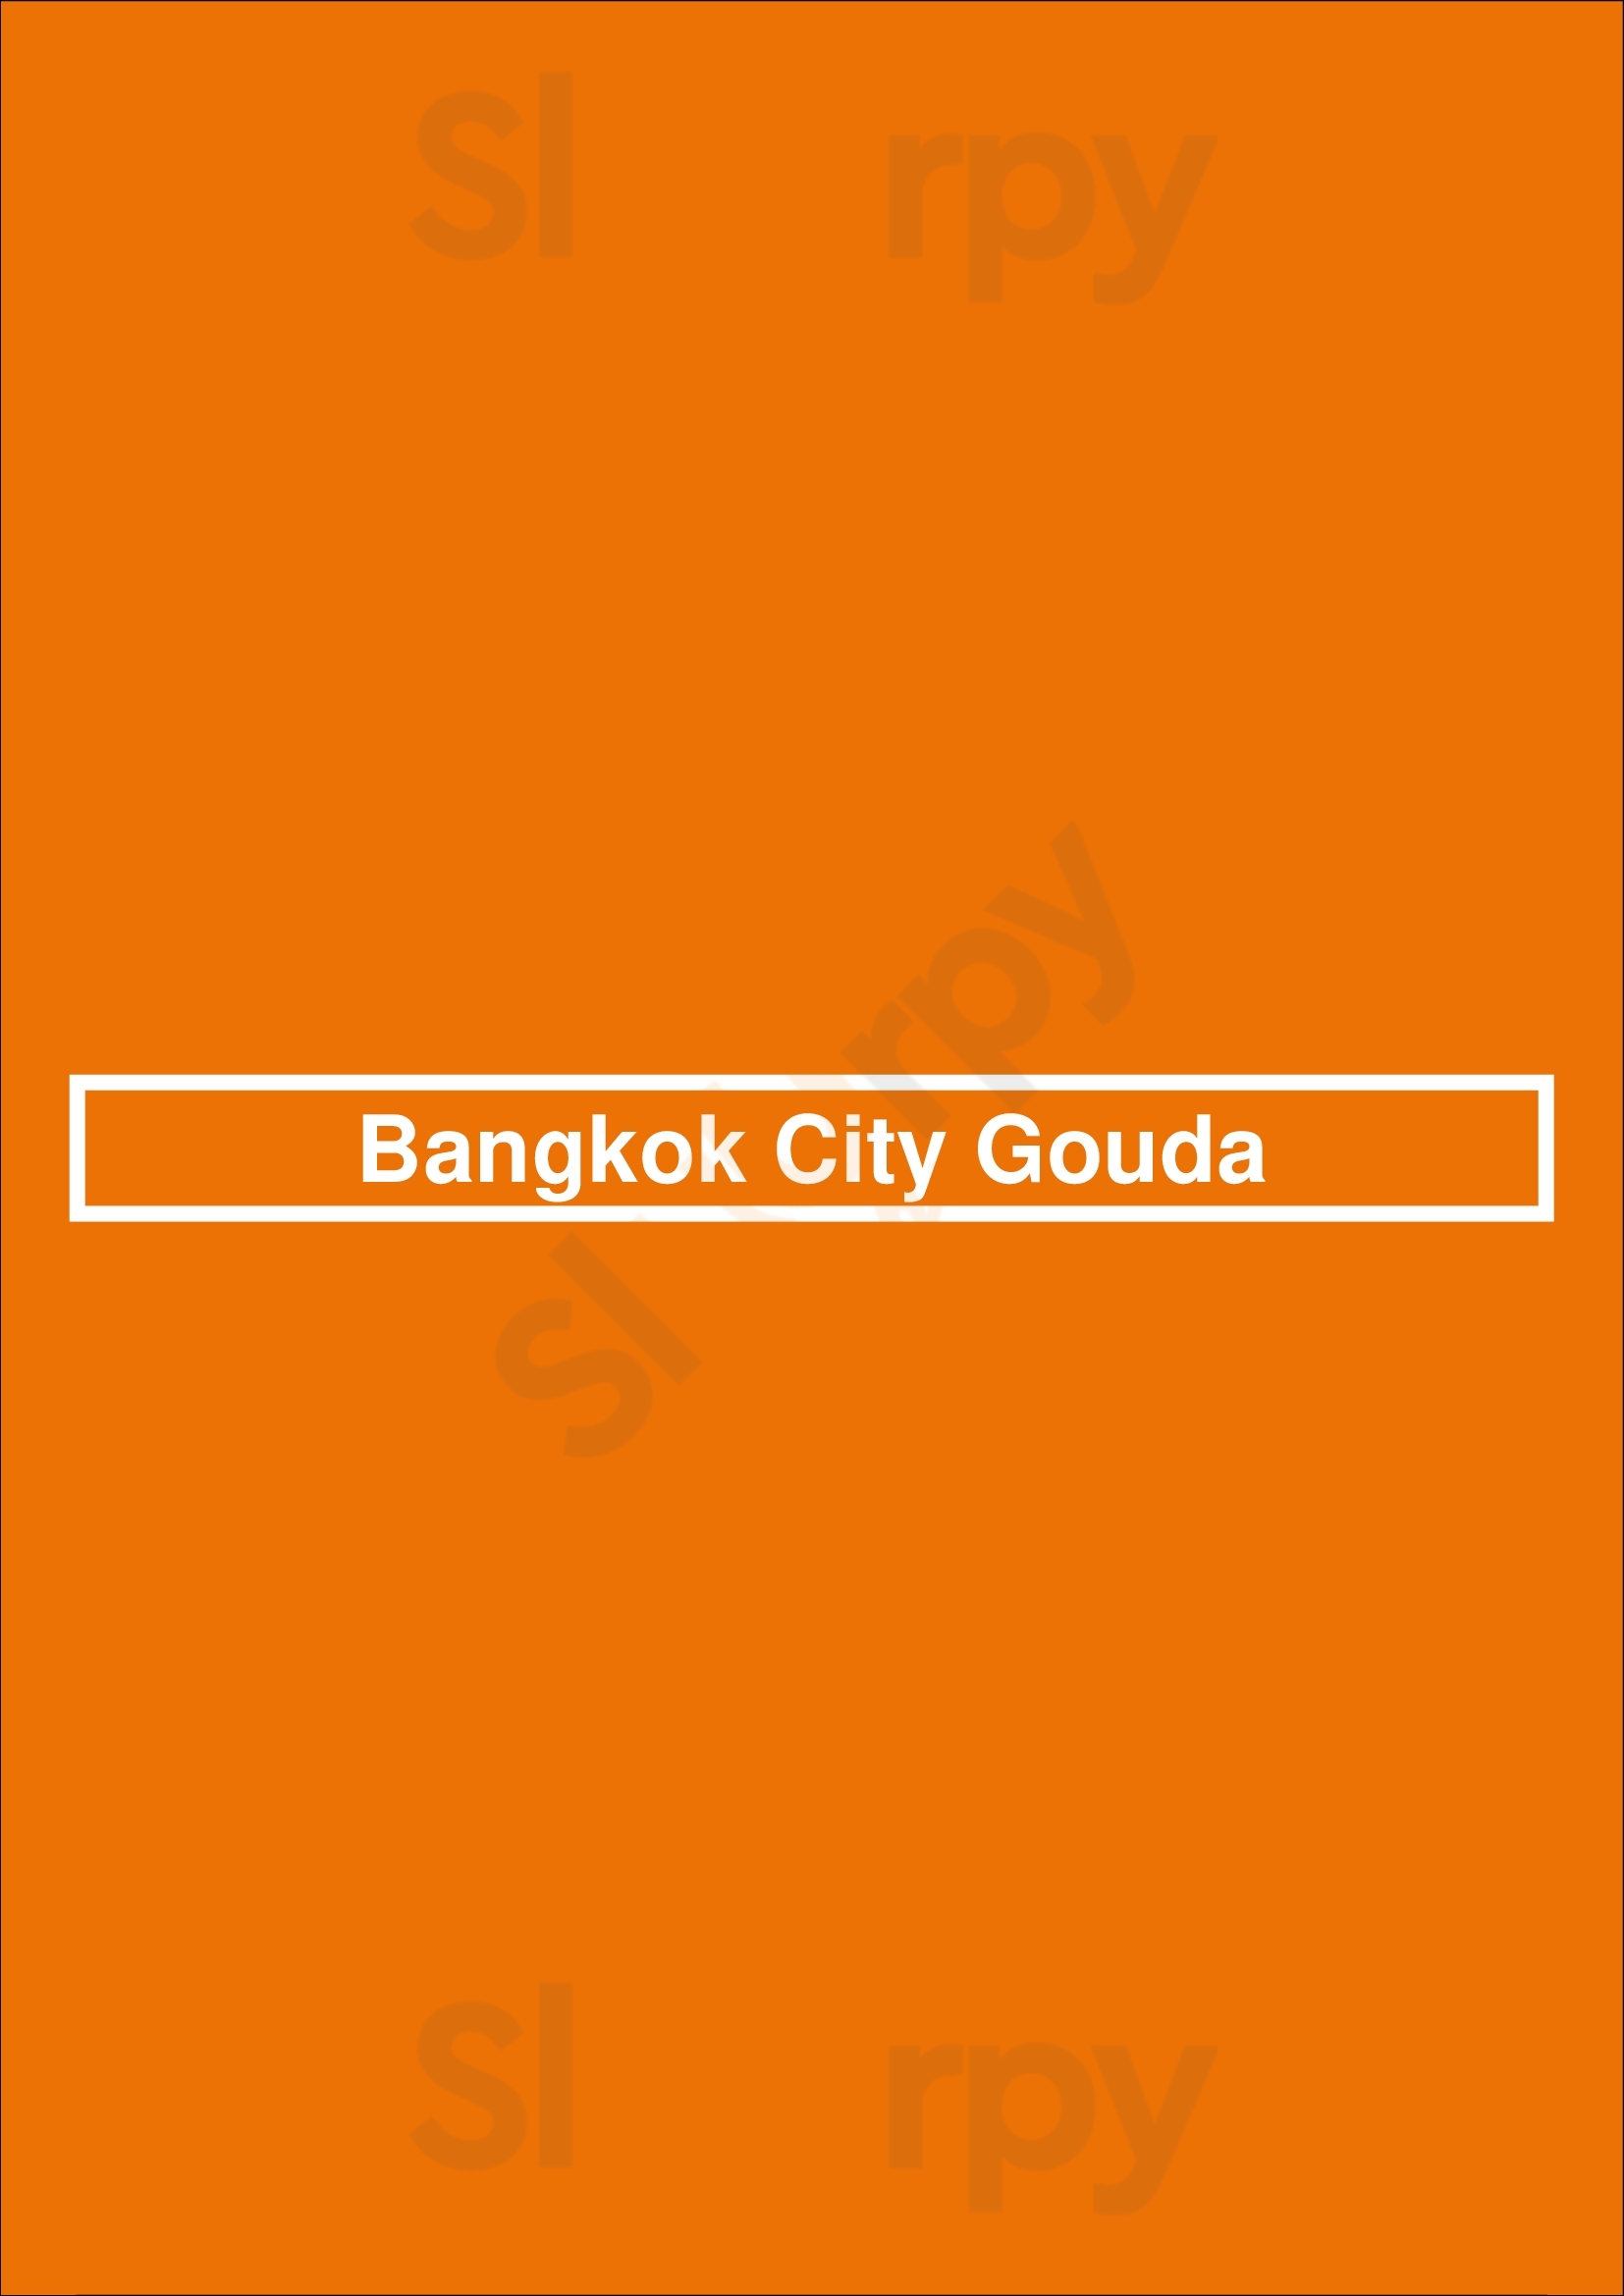 Bangkok City Gouda Gouda Menu - 1